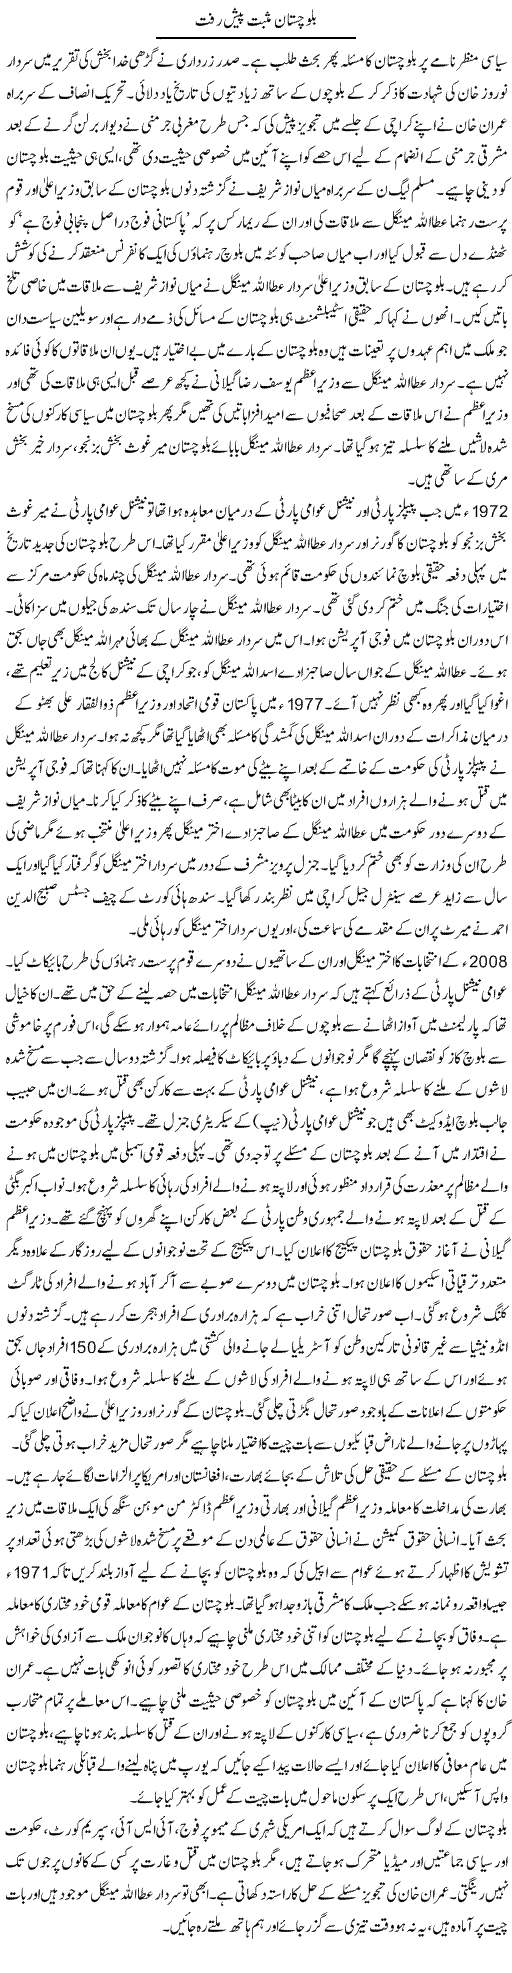 Balochistan Express Column Tauseef Ahmed 31 December 2011